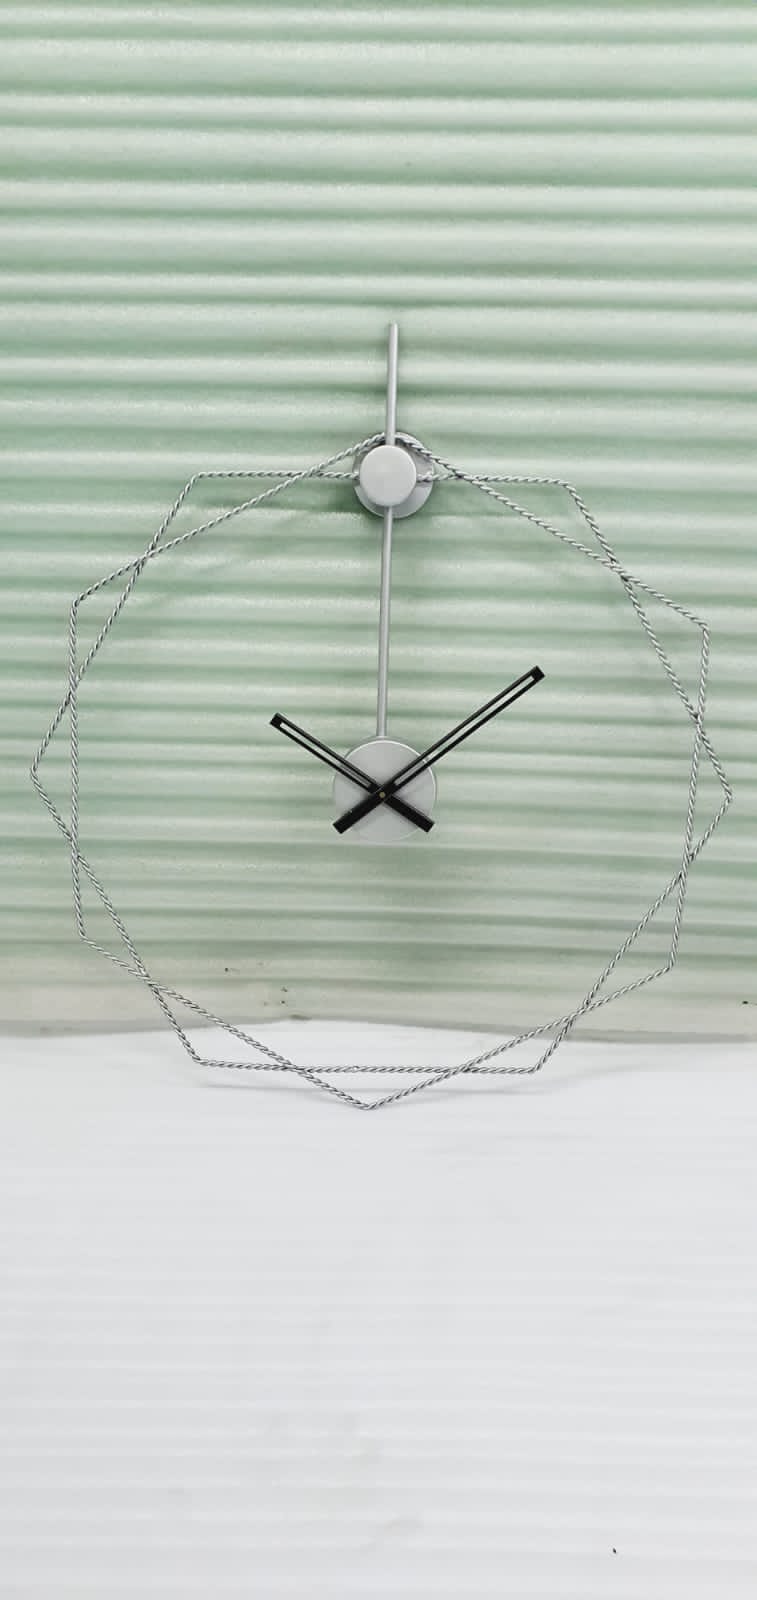 PC Home Decor | Wire Wall Clock, Silver